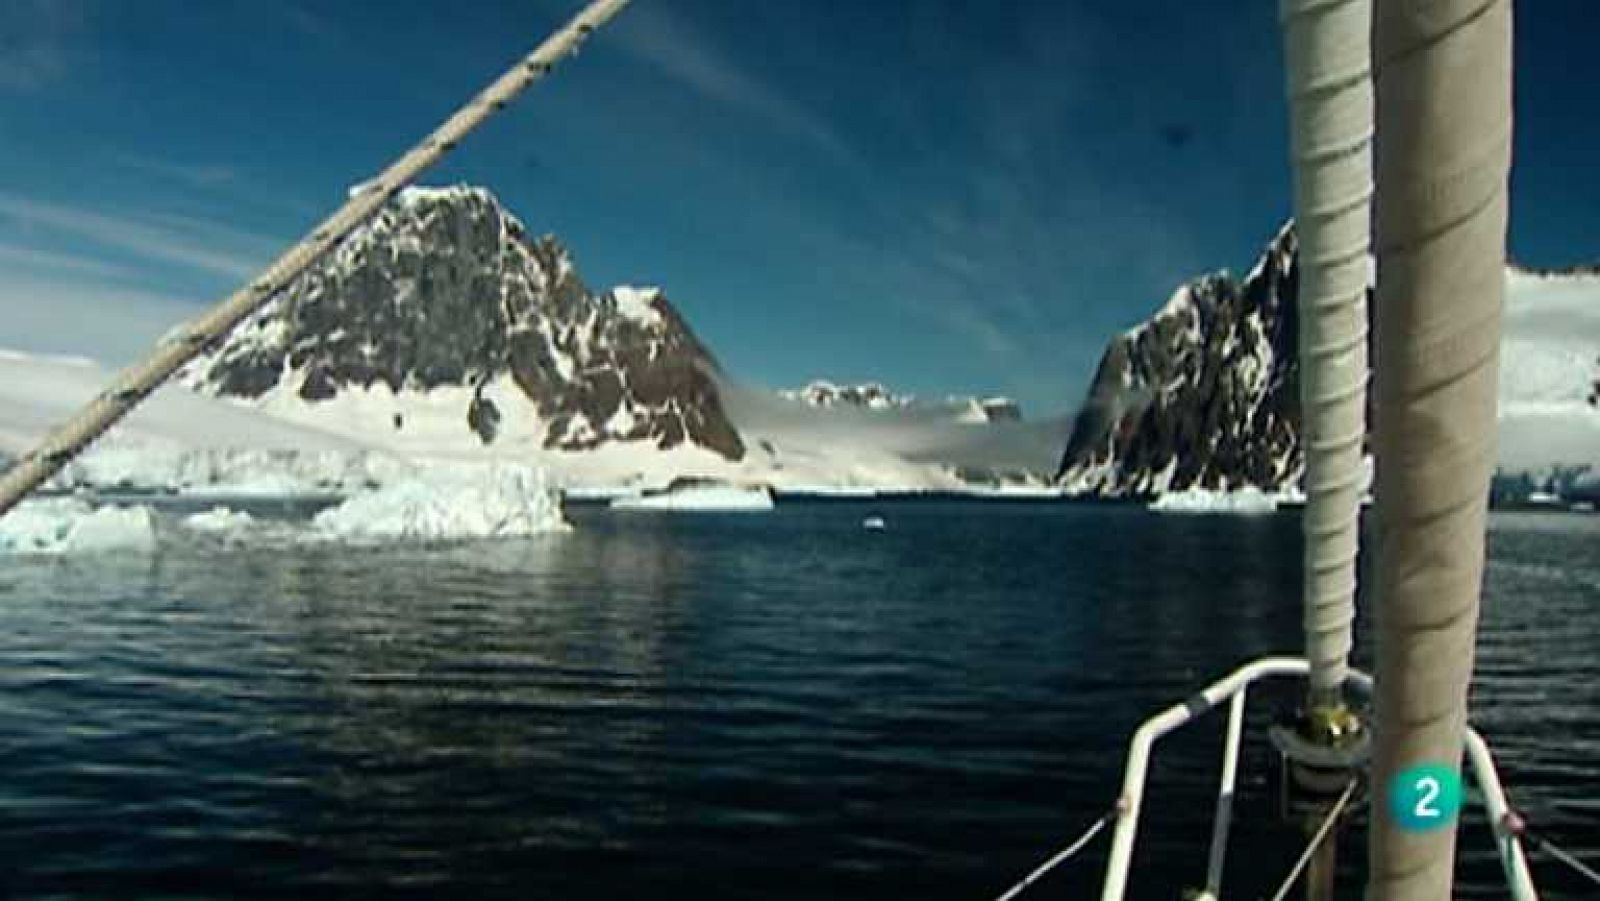 Al filo de lo imposible - En el confín de la Tierra, 1 (Expedición a la Antártida)  - Ver ahora